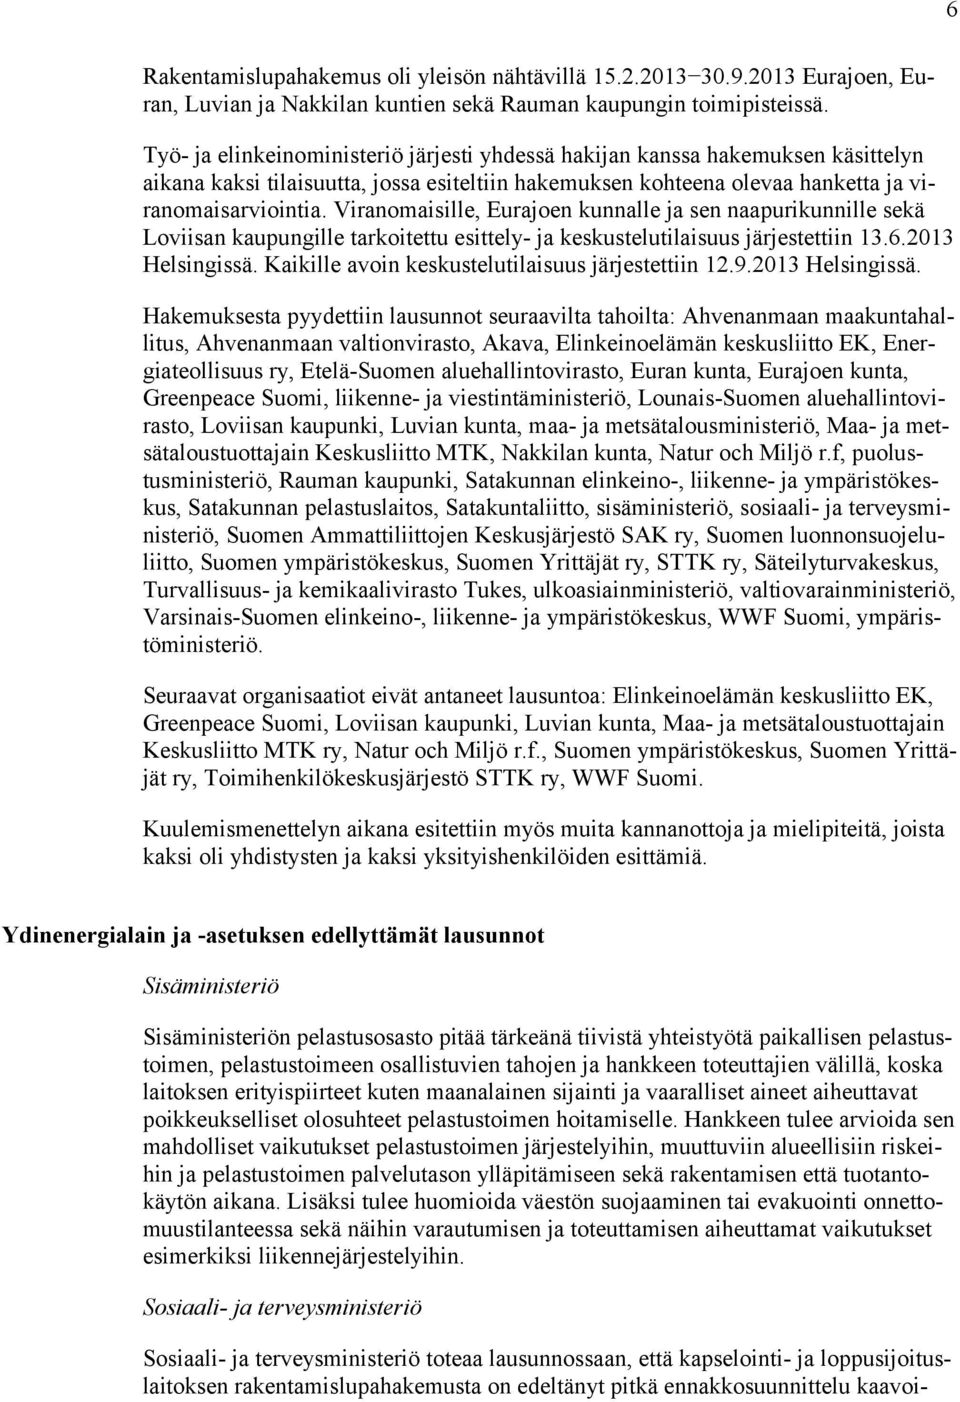 Viranomaisille, Eurajoen kunnalle ja sen naapurikunnille sekä Loviisan kaupungille tarkoitettu esittely- ja keskustelutilaisuus järjestettiin 13.6.2013 Helsingissä.